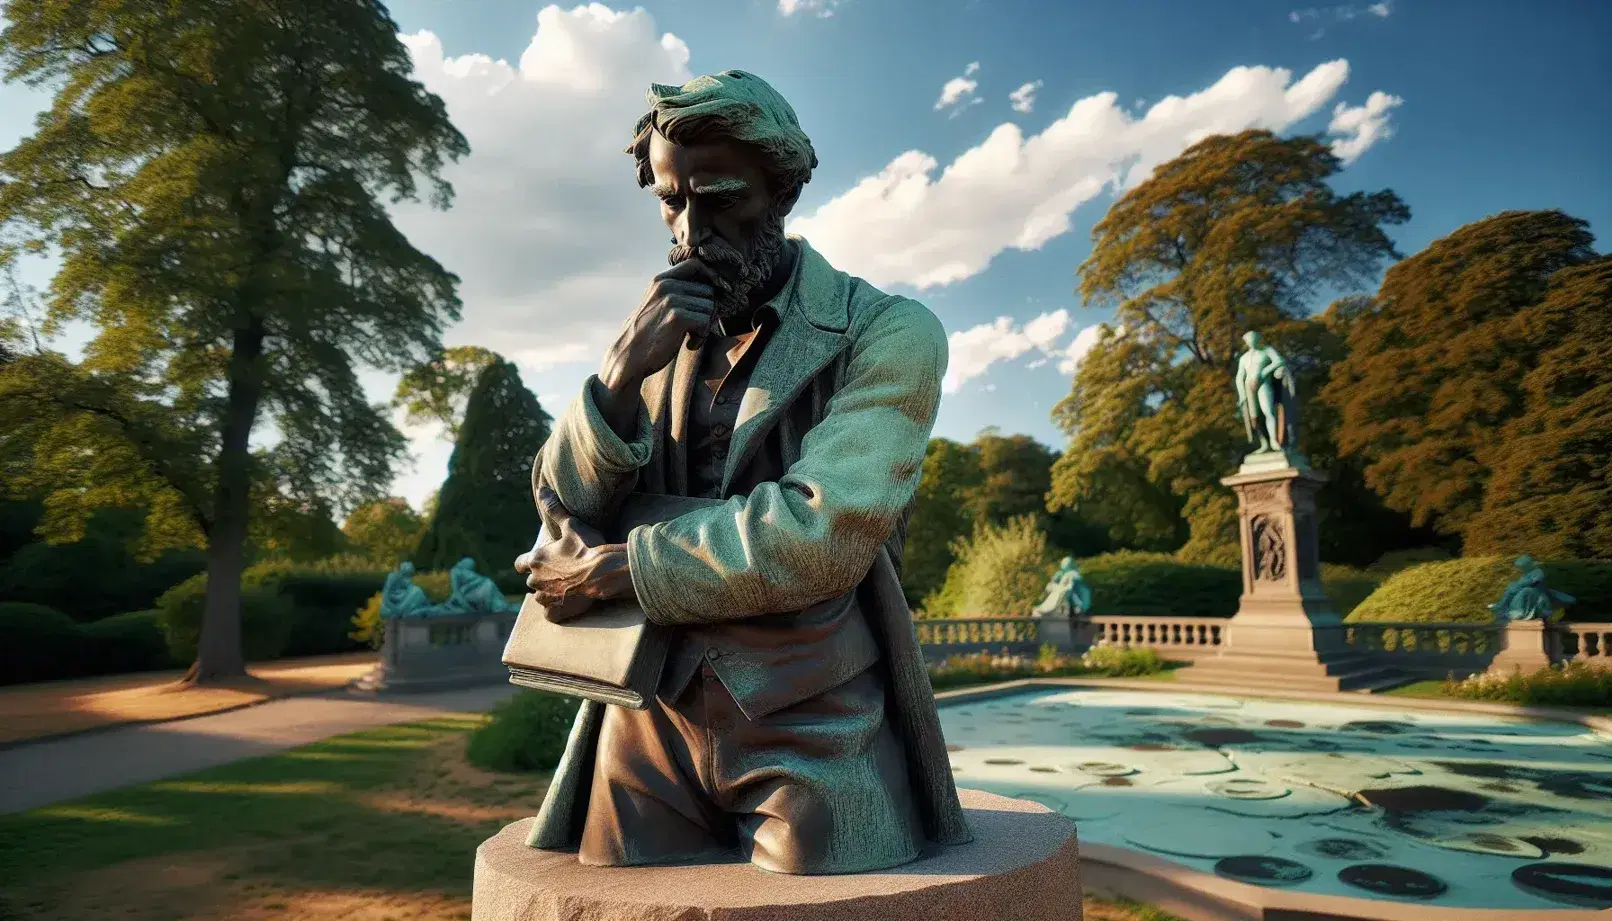 Estatua de bronce de hombre pensativo con barba, apoyando su mentón en una mano y sosteniendo un libro cerrado, sobre pedestal de piedra en parque con árboles y cielo azul.